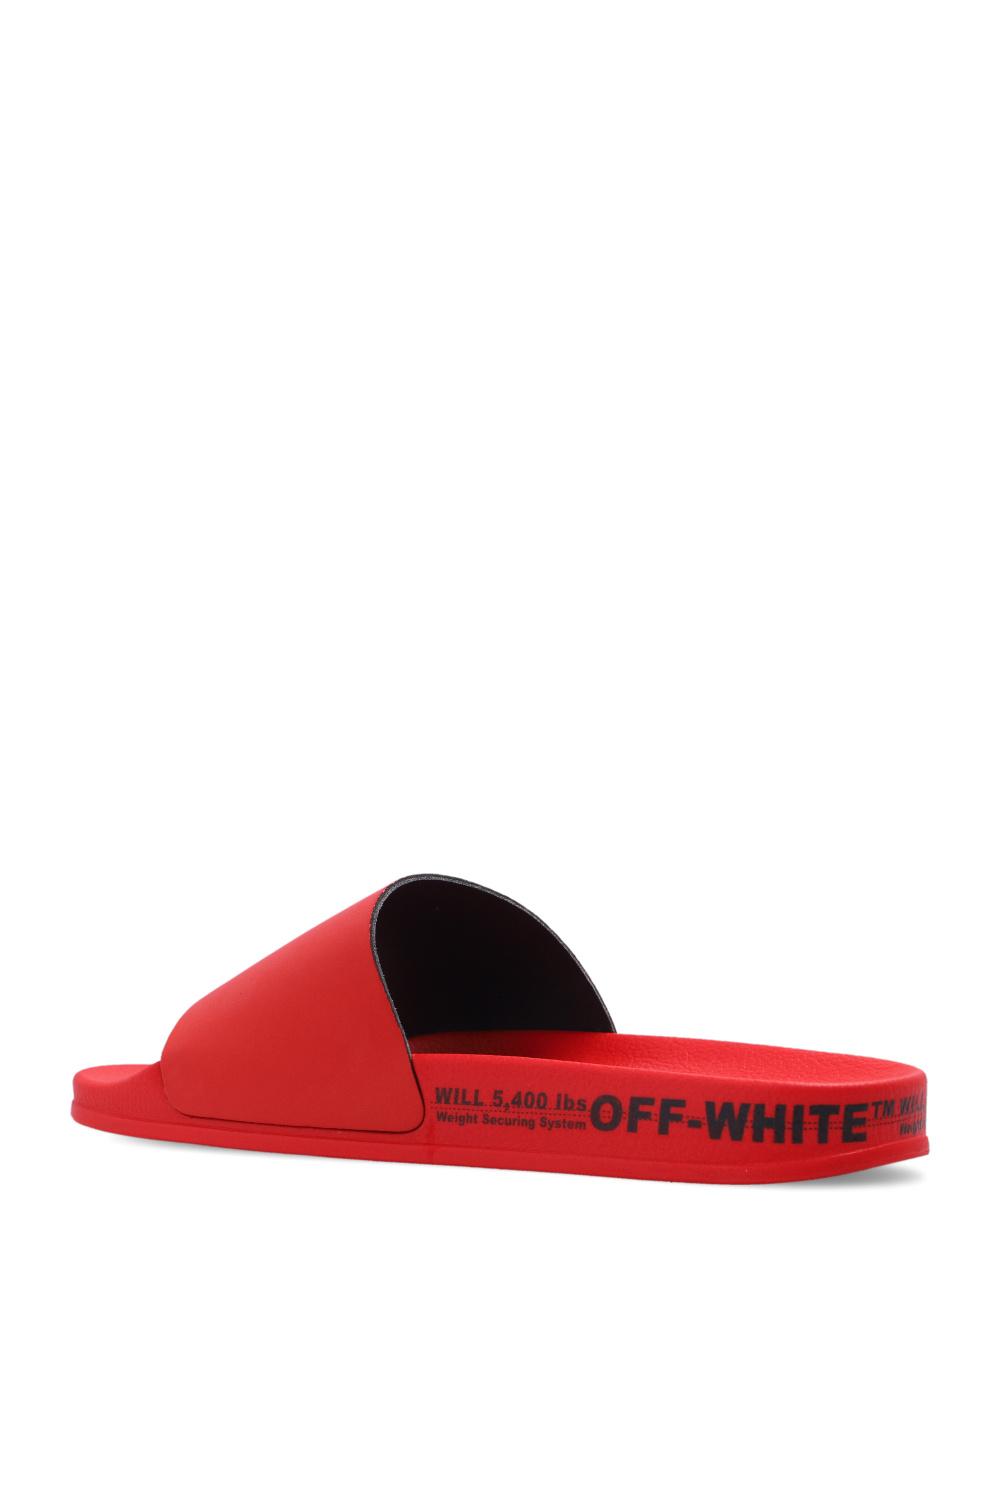 Off-White c/o Virgil Abloh Rubber Sandals in Red for Men slides and flip flops Sandals and flip-flops Mens Shoes Sandals 